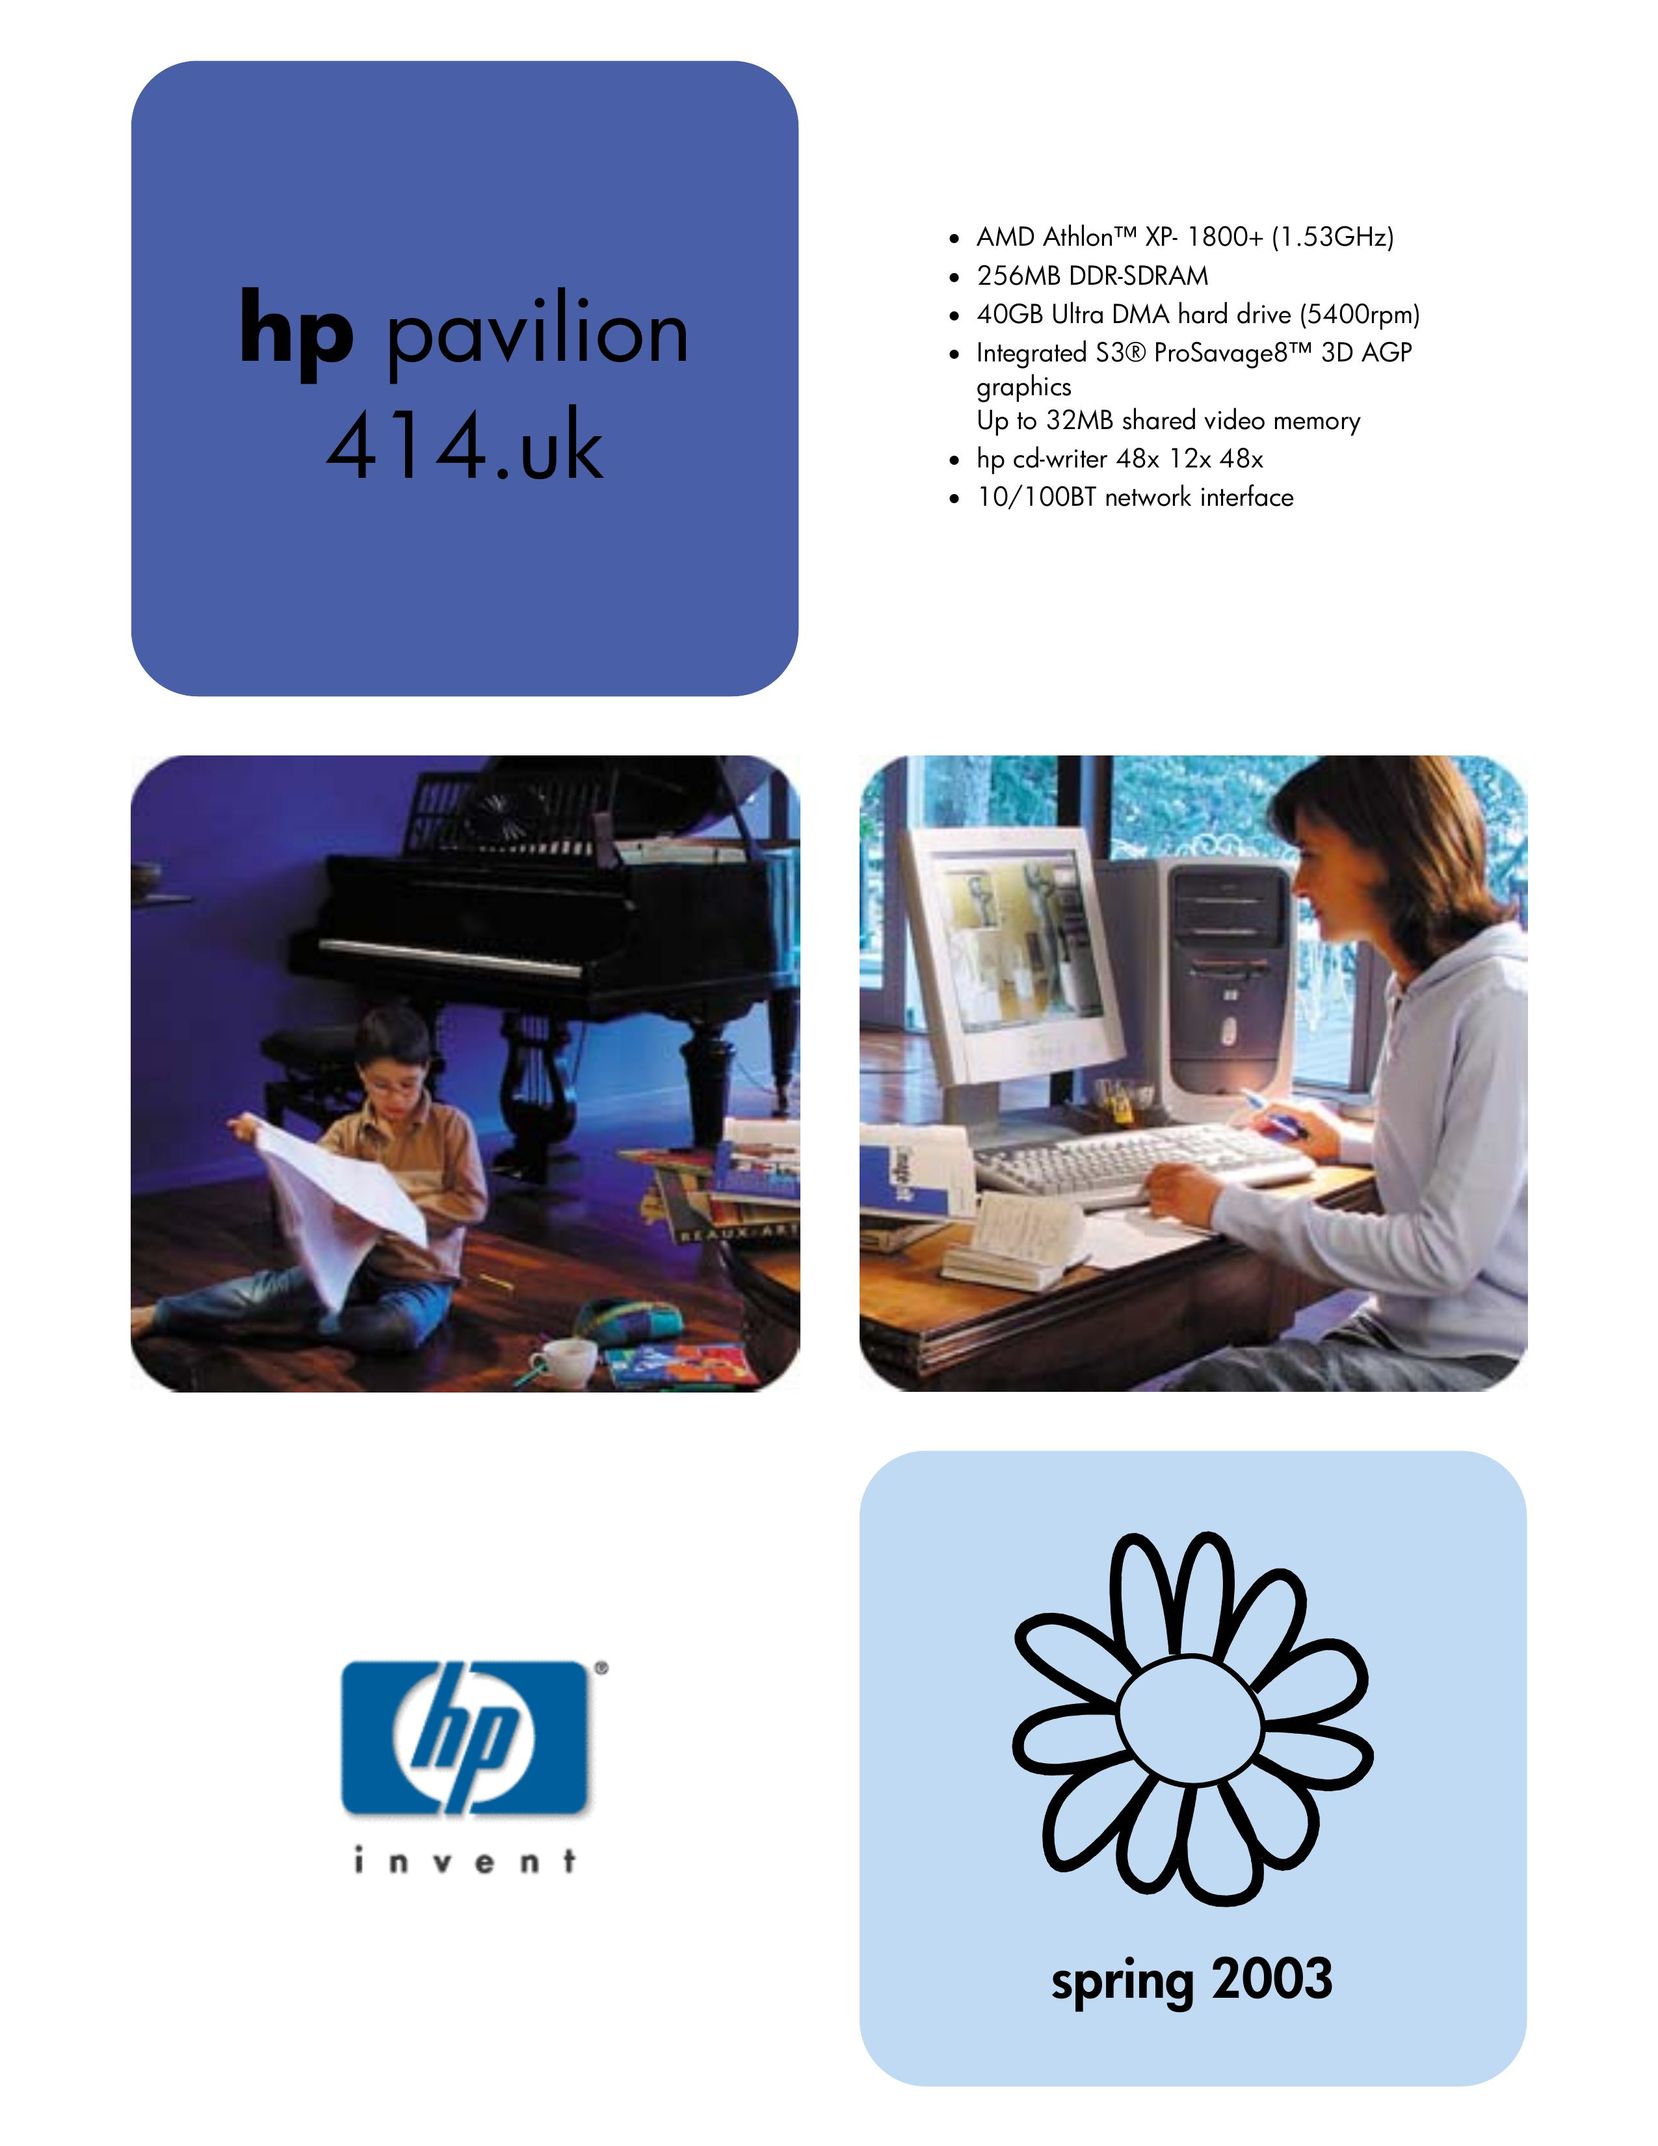 HP (Hewlett-Packard) 414.uk Personal Computer User Manual